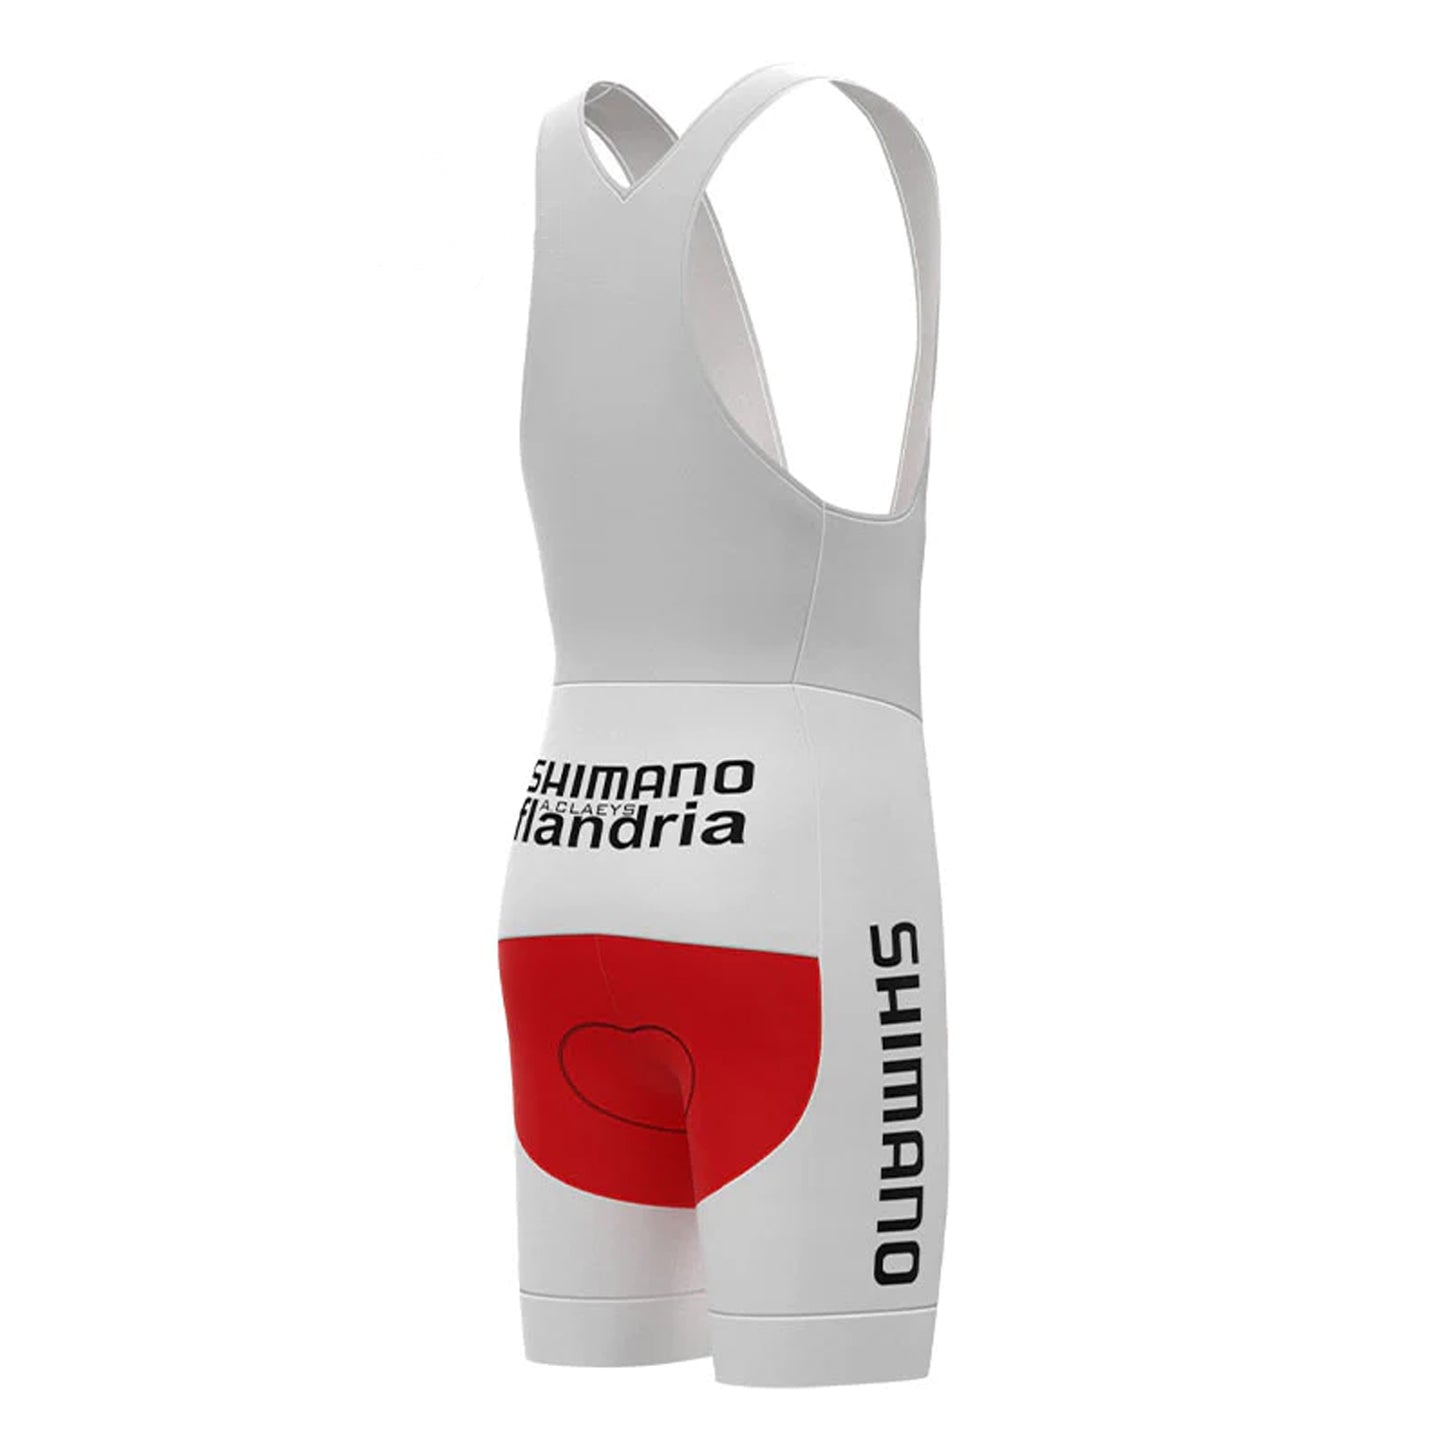 Shimano Flandria Red Vintage Cycling Bib Shorts